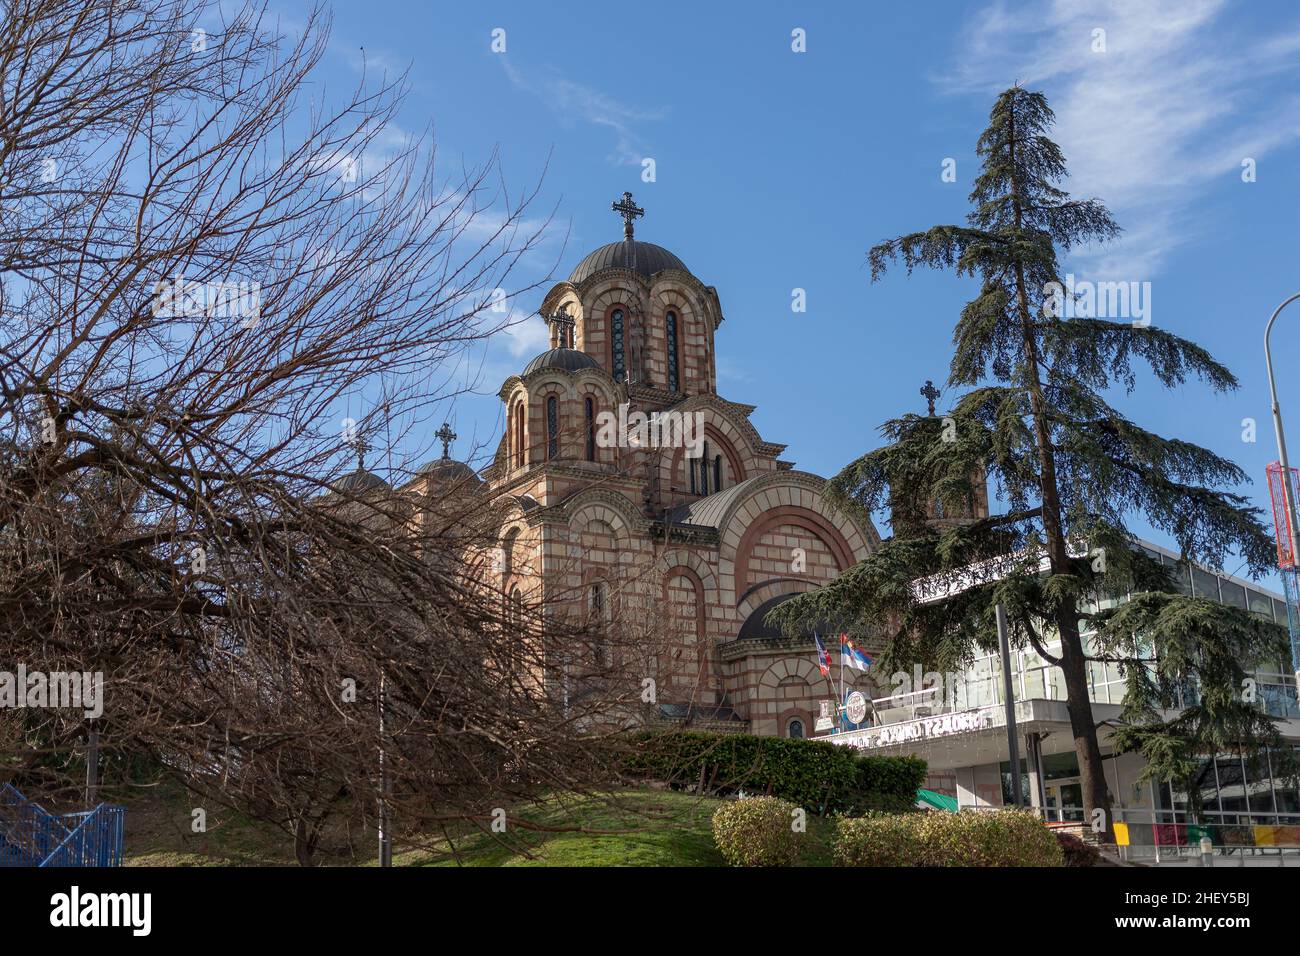 Serbia: Vista de la Iglesia Ortodoxa de San Marcos en Belgrado Foto de stock